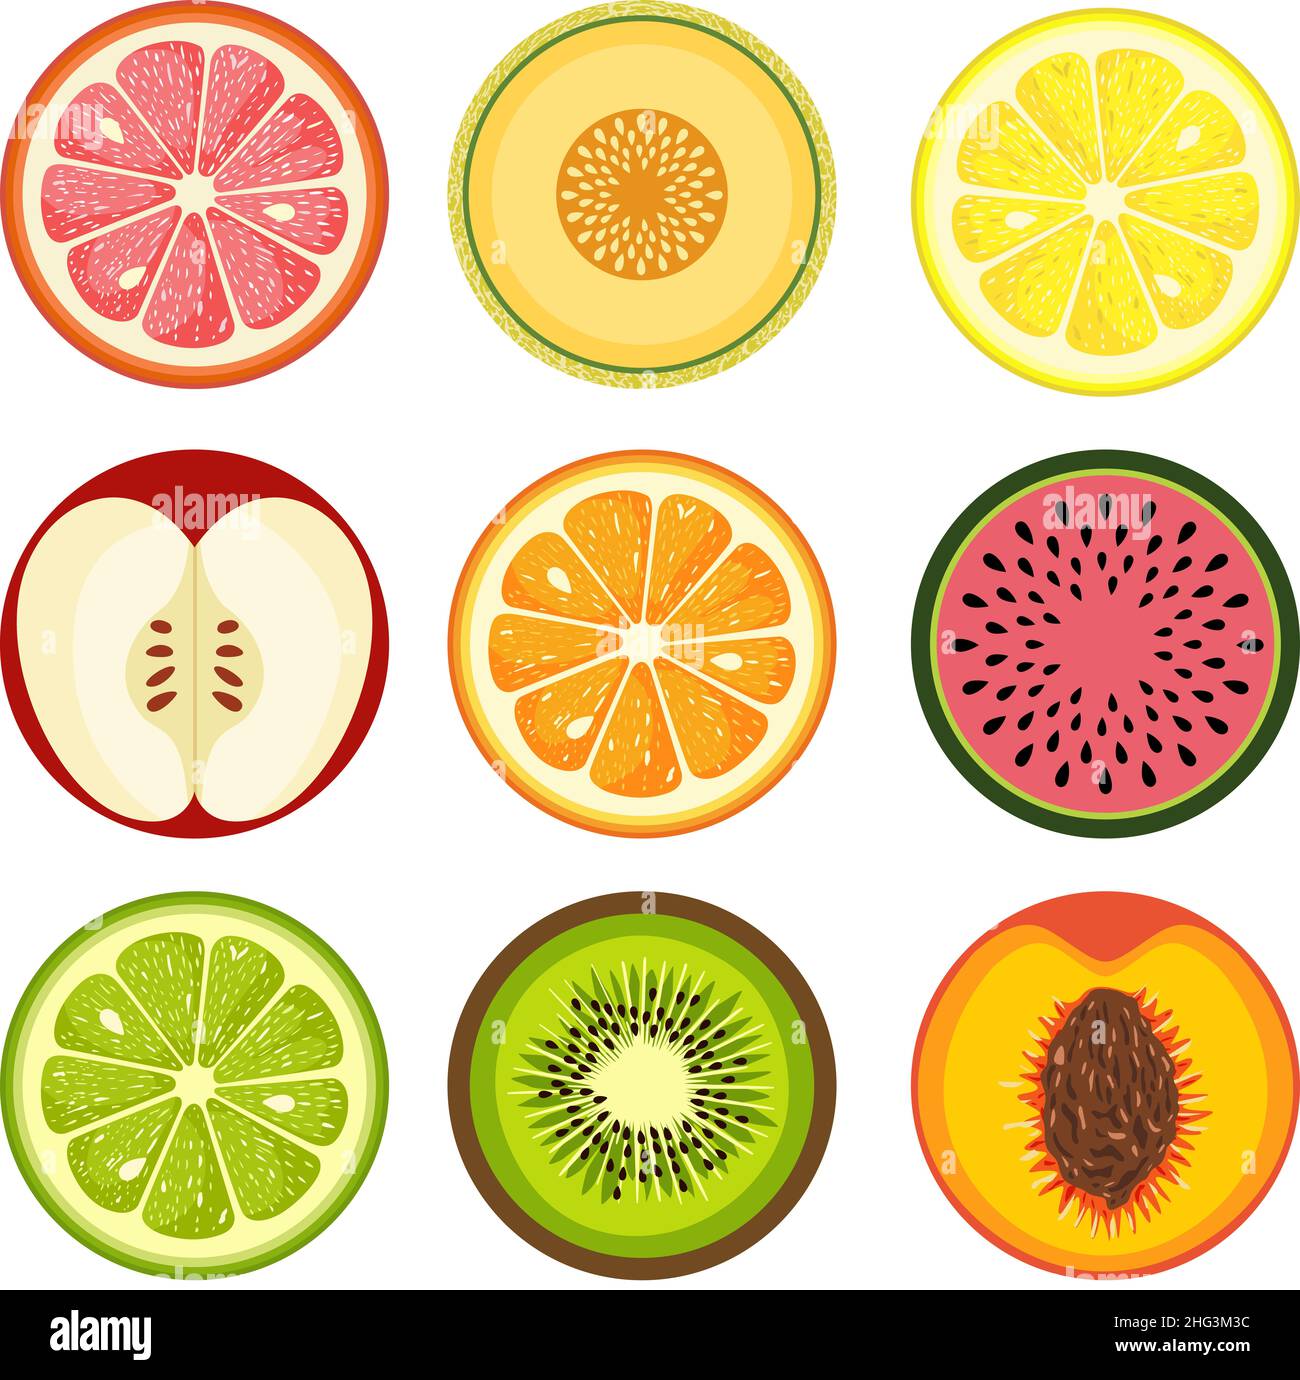 Set of round summer fruit slices Stock Photo - Alamy